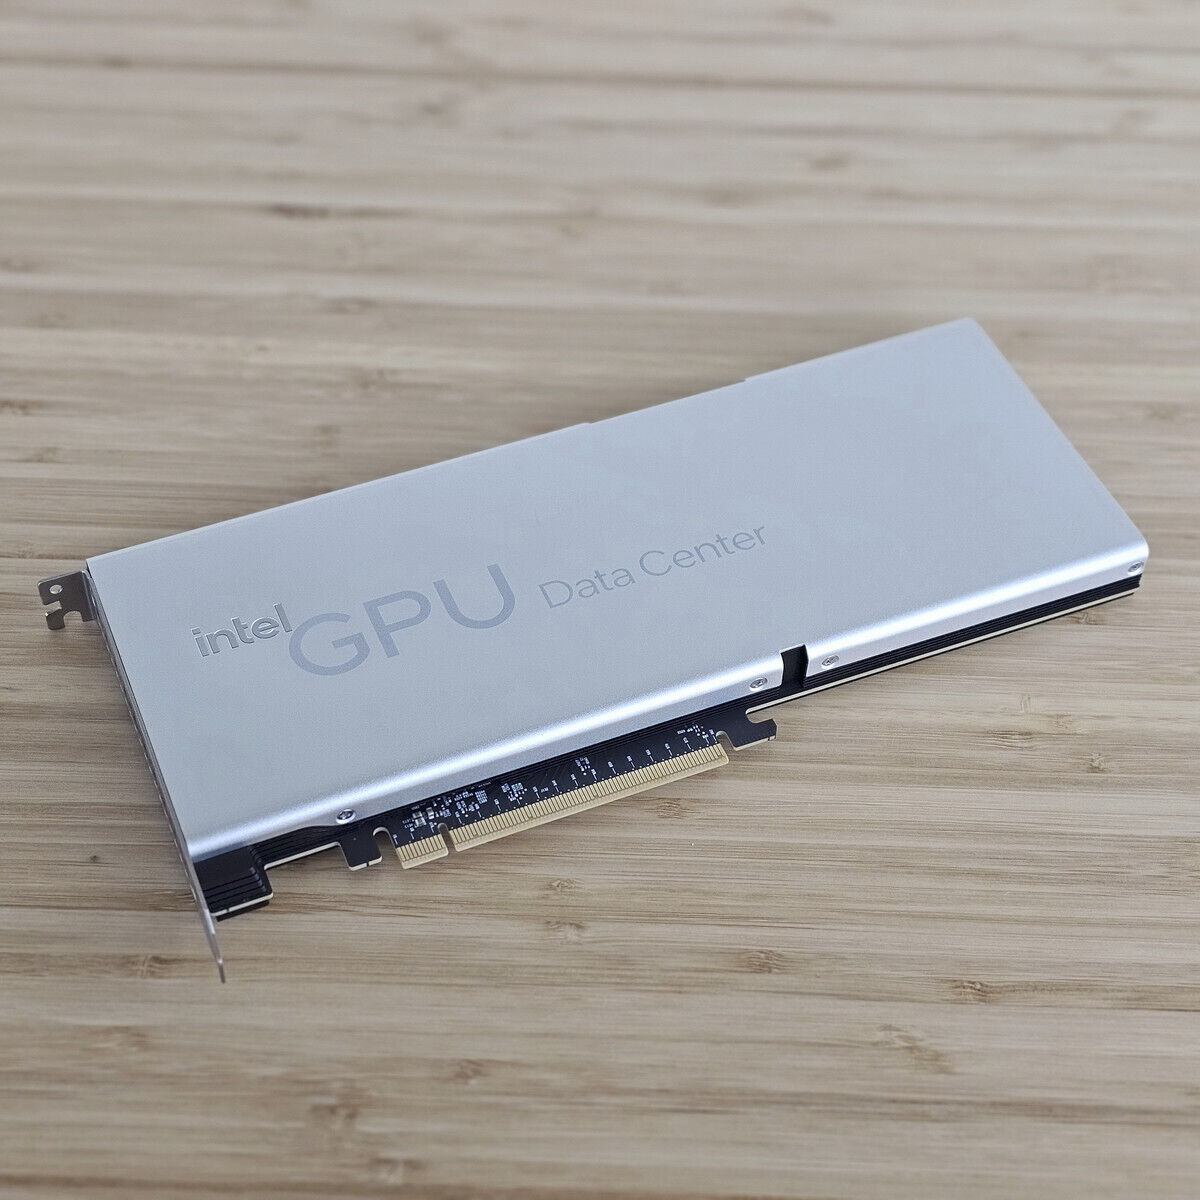 Intel Data Center GPU Flex 170 16GB PCI-E 4.0 Workstation GPU Accelerator Card